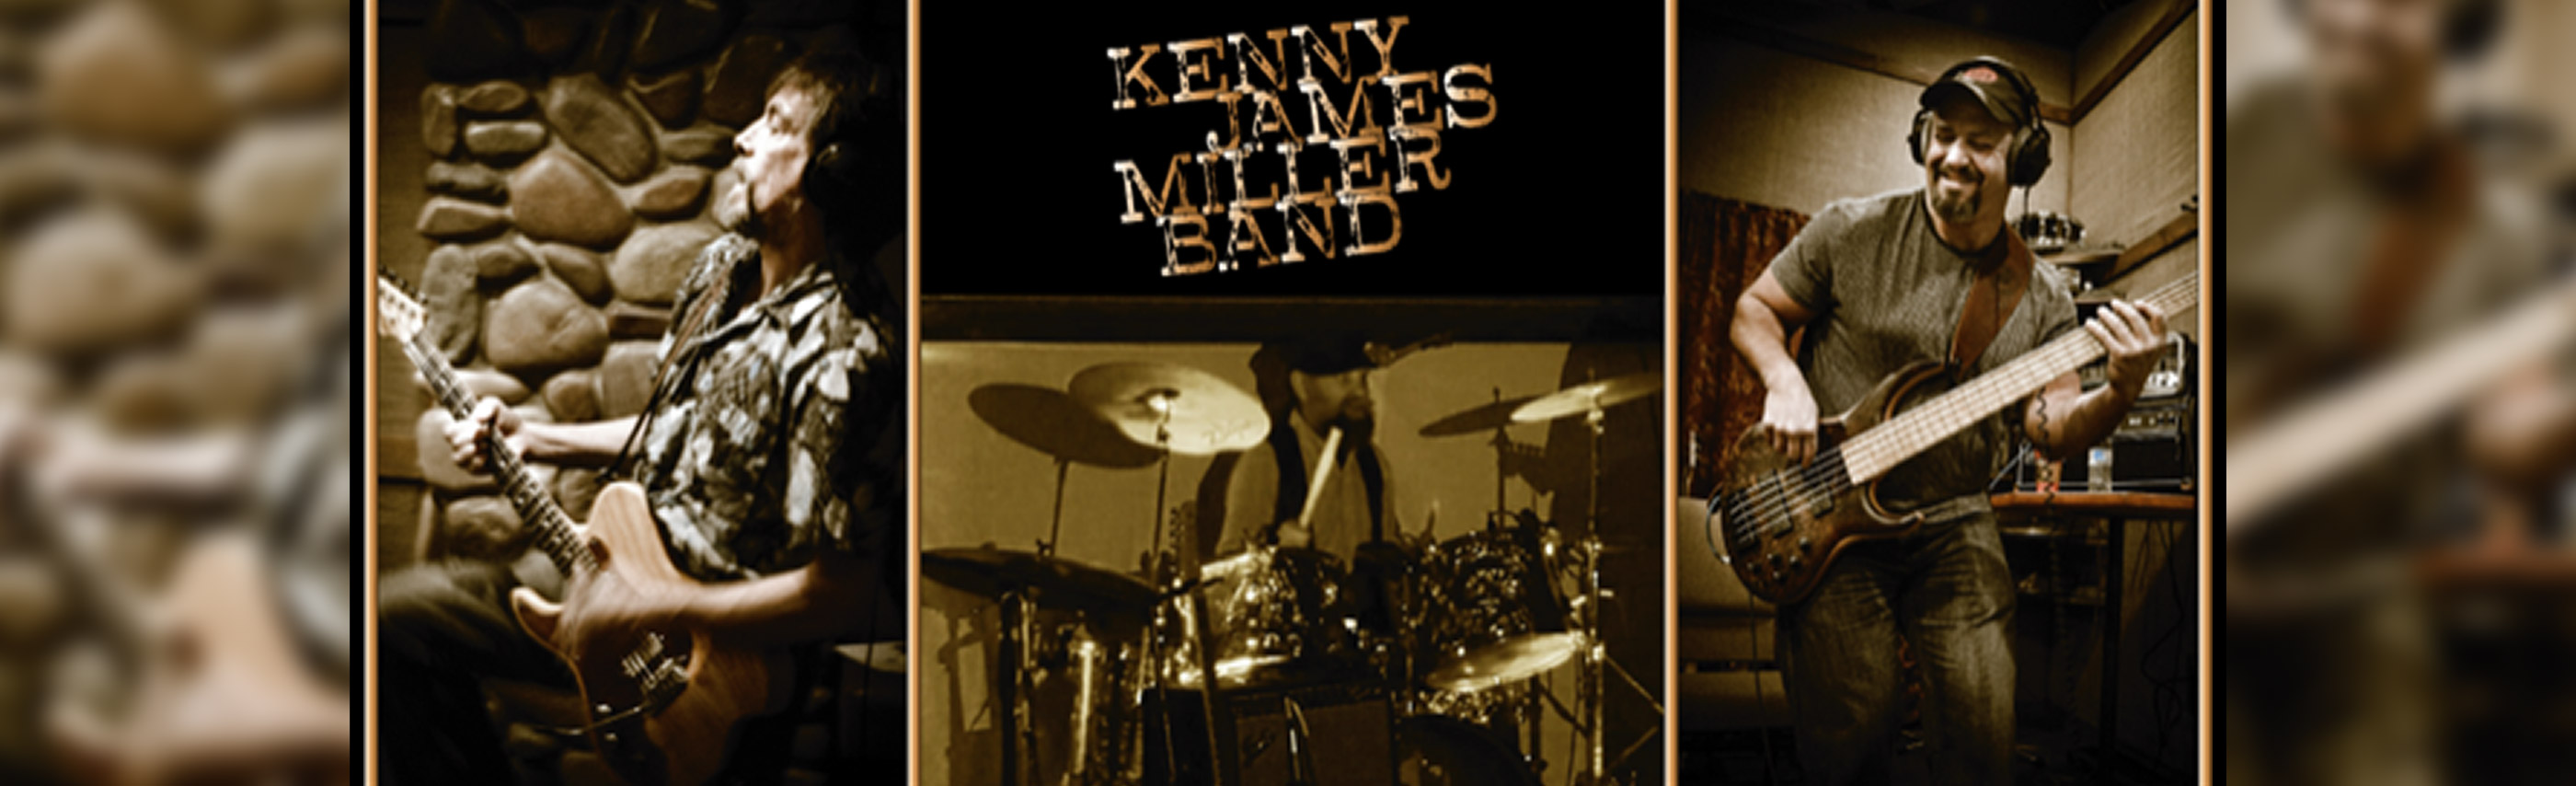 Kenny James Miller Band